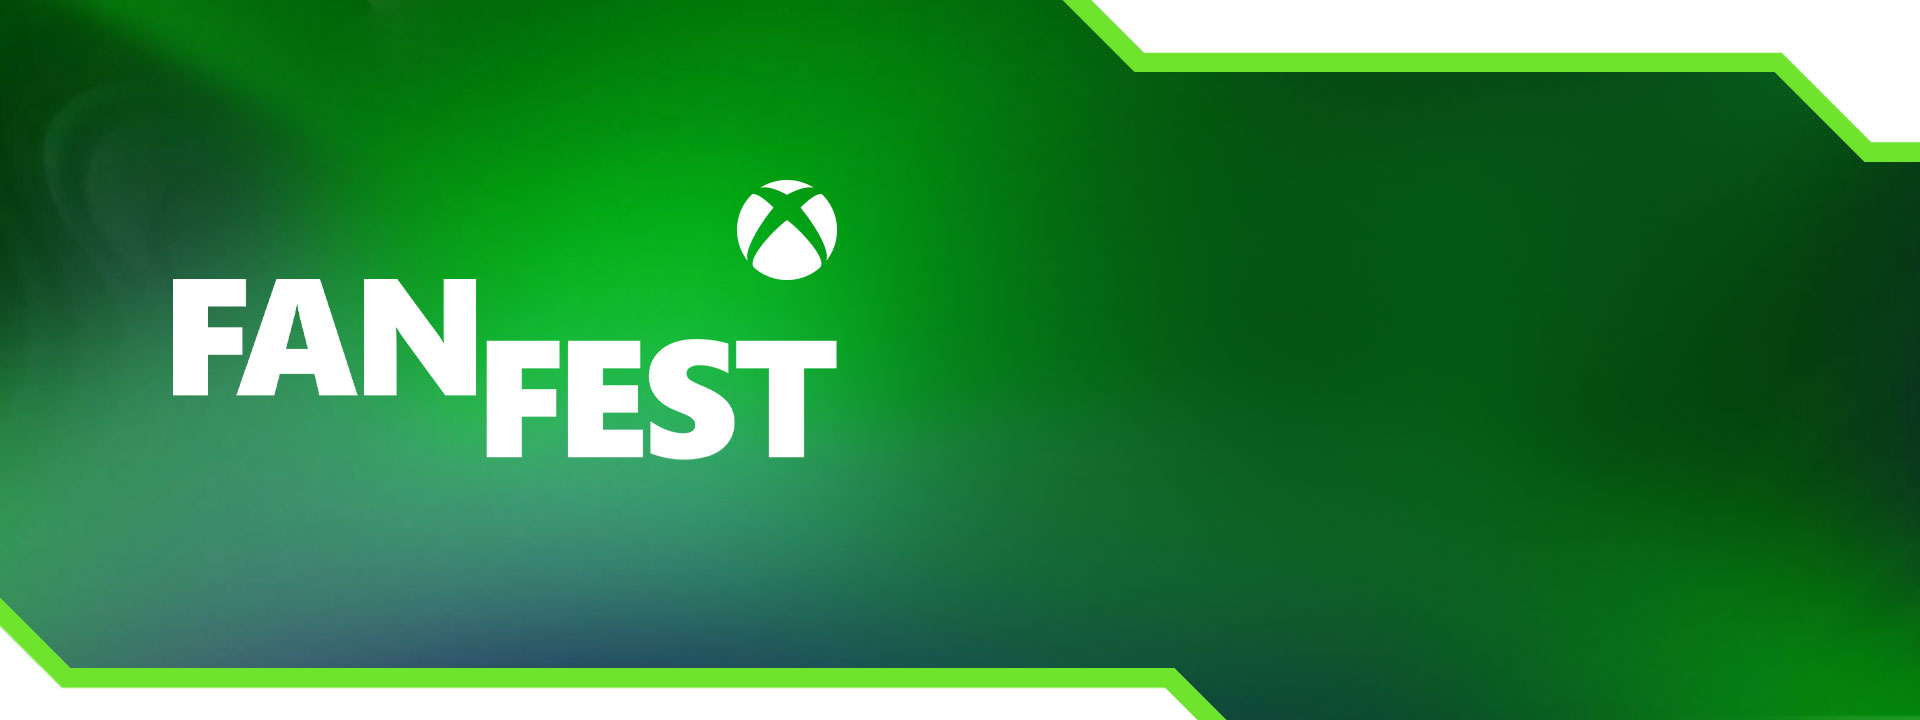 Xbox-földgömb, FanFest zöld színátmenetekkel.